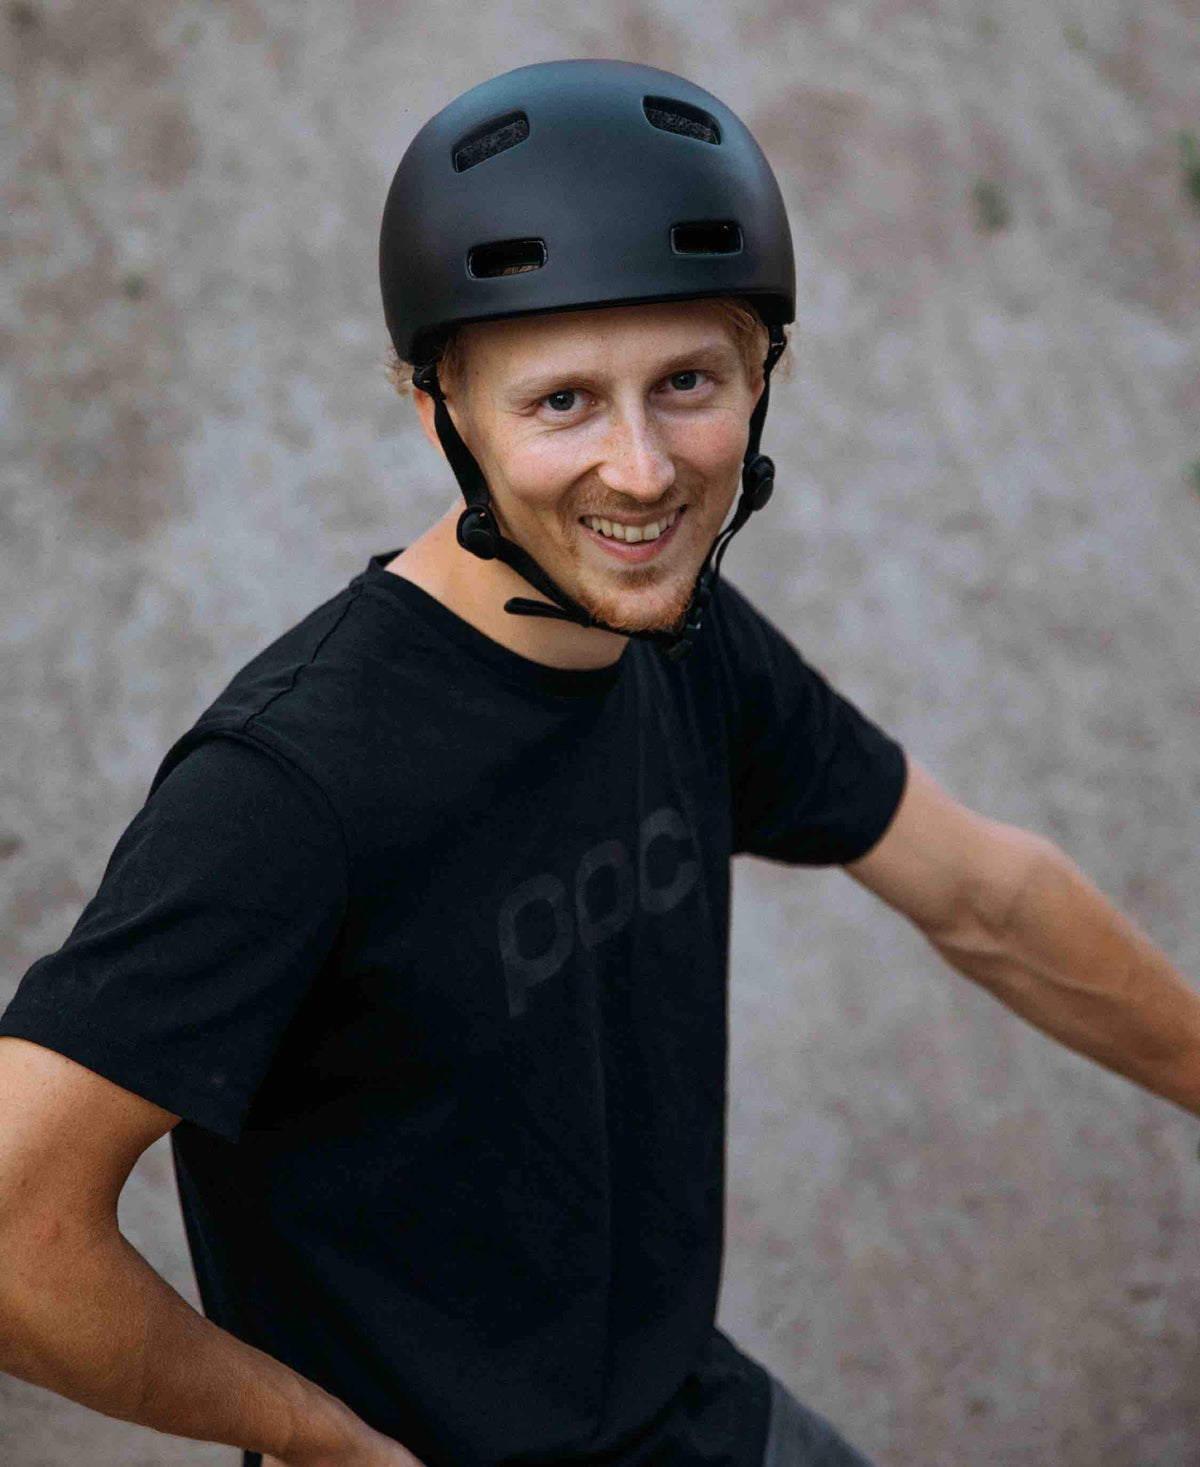 POC Crane MIPS Road Cycling Helmet (Matt Black)